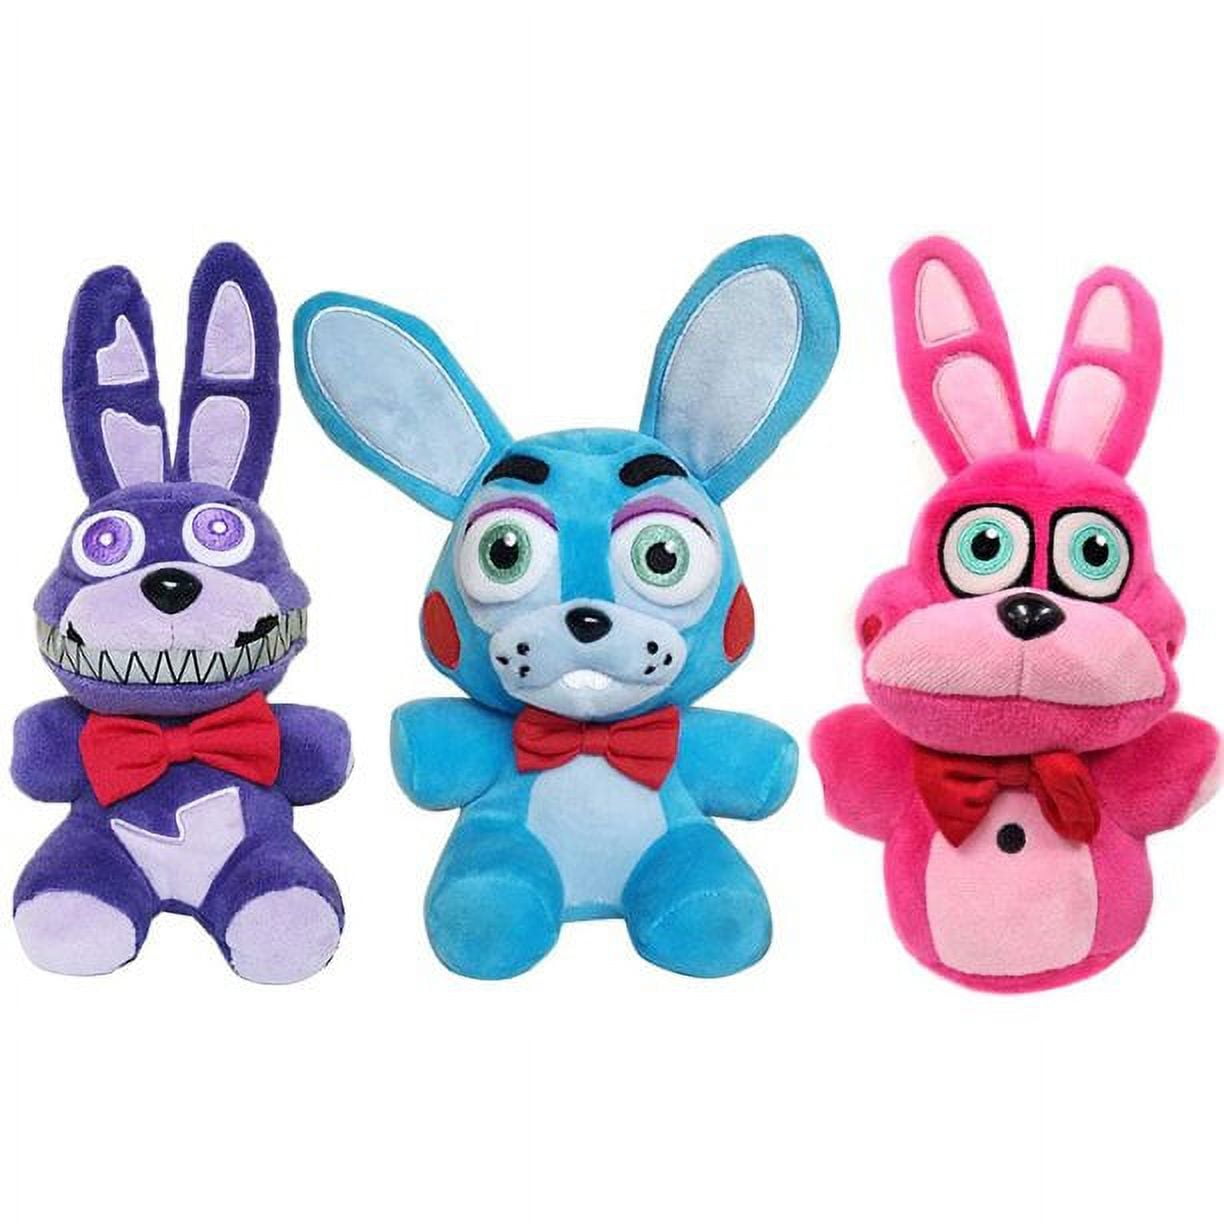 Set 3 Bonnie Plushies - 7 Bonnie the Rabbit, Toy Bonnie, Bonnet